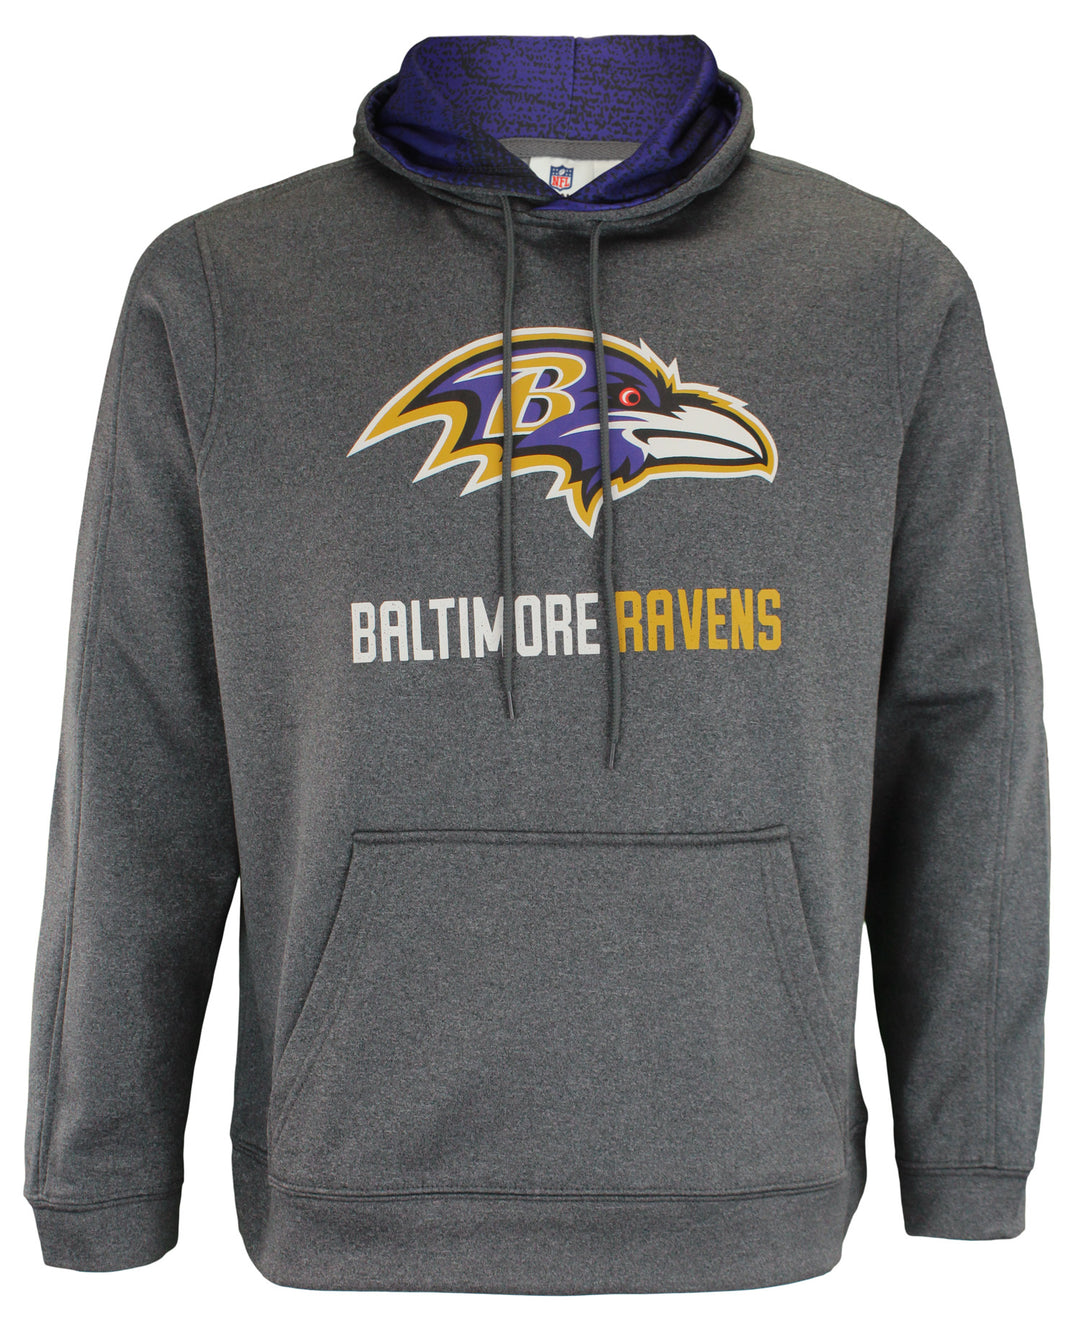 Zubaz NFL Baltimore Ravens Men's Heather Grey Performance Fleece Hoodie